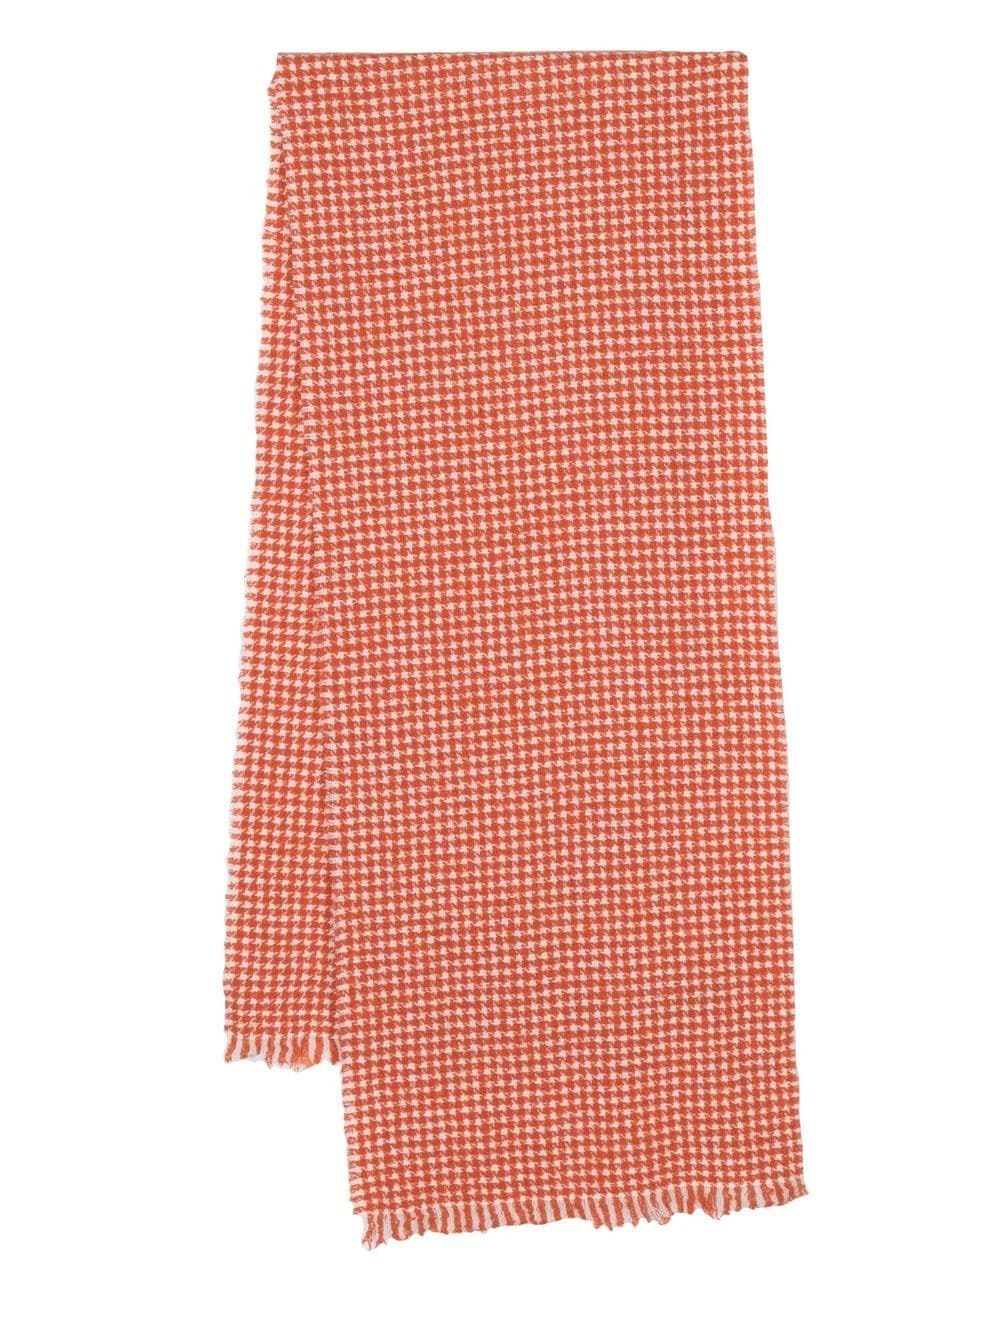 Destin houndstooth-check scarf - Orange